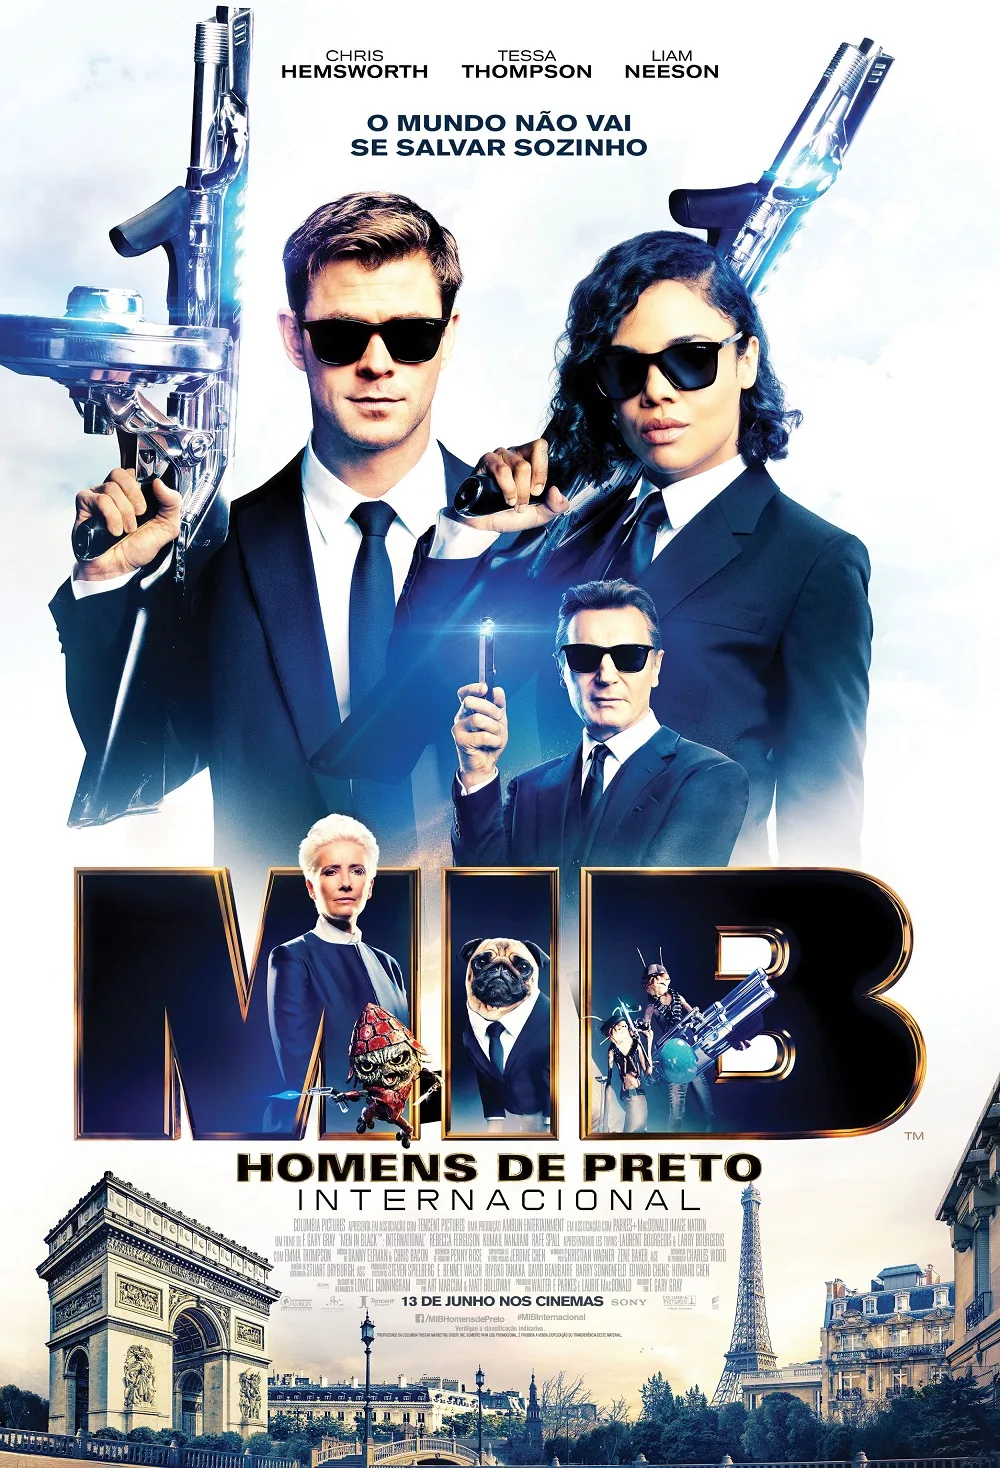 Homens de Preto MIB Internacional Sony Pictures